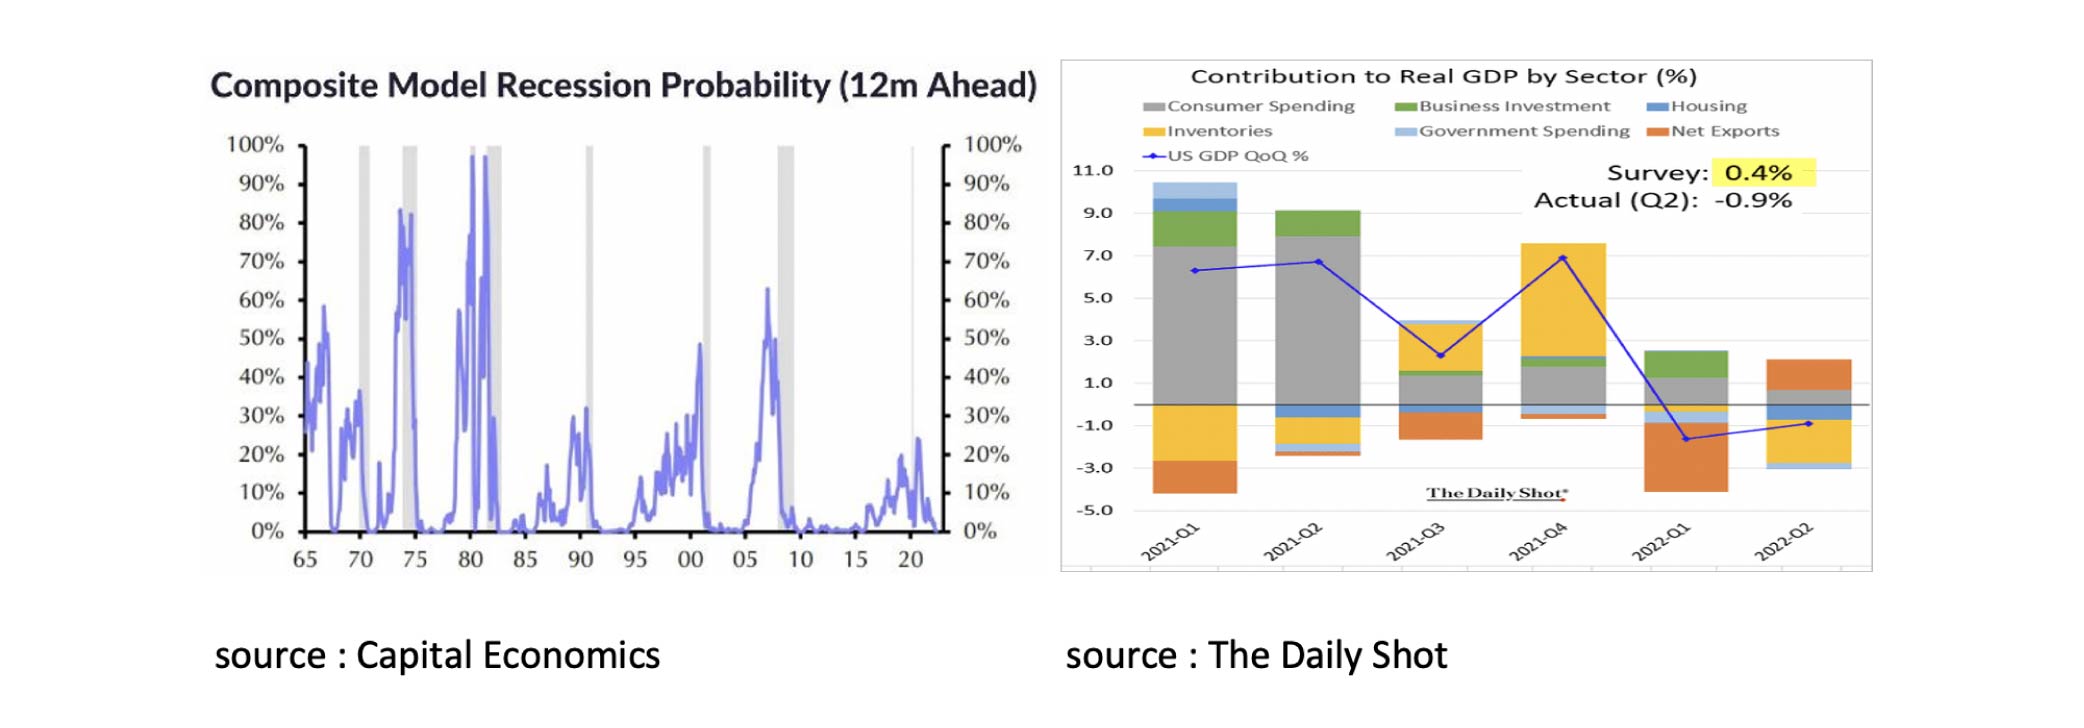 Composite model recession probability